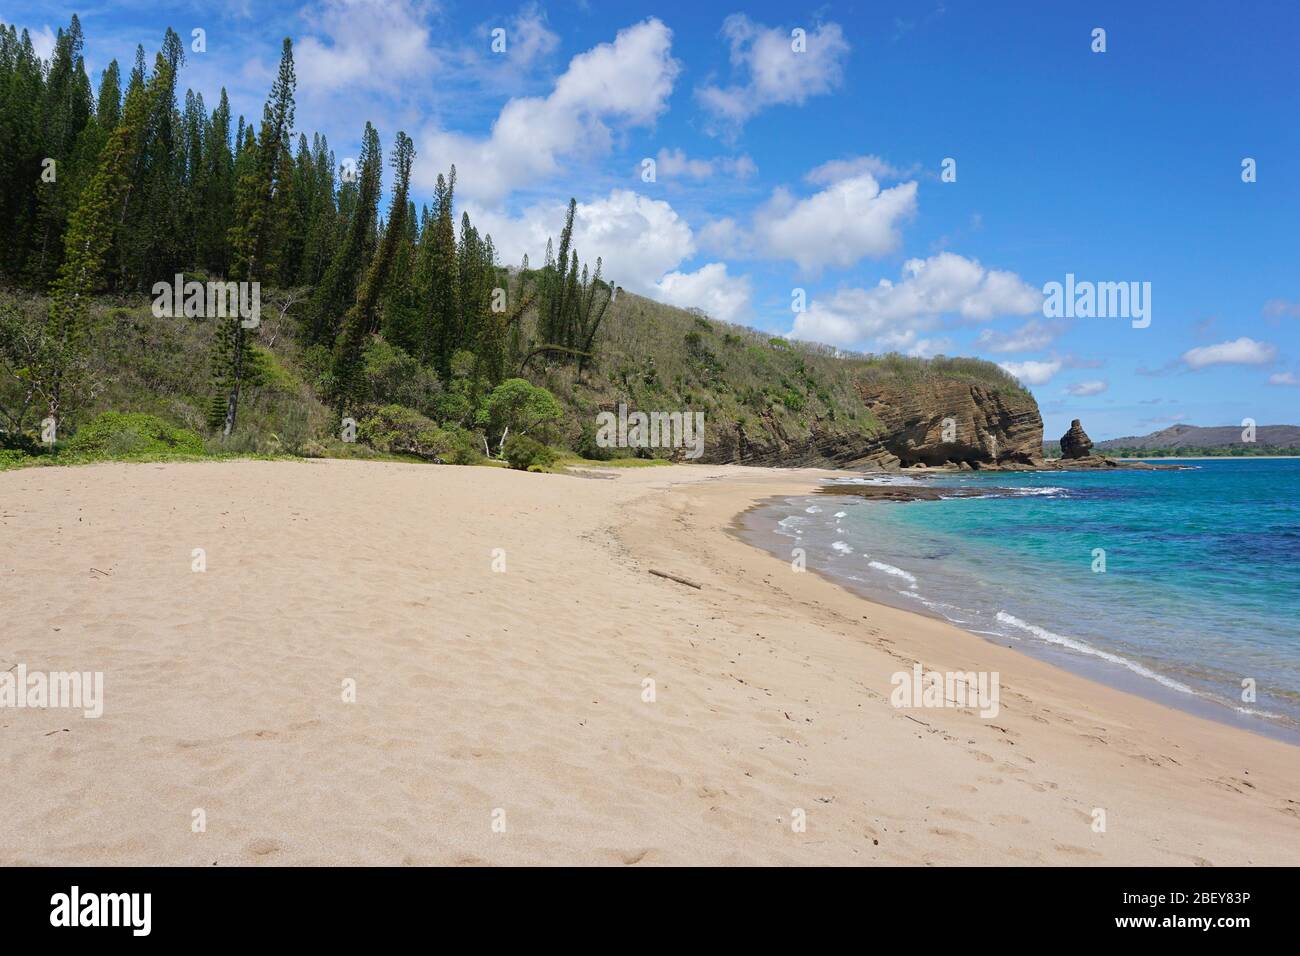 Belle plage de sable en Nouvelle-Calédonie, côte ouest de l'île de Grande-Terre près de Bourail, Océanie Banque D'Images